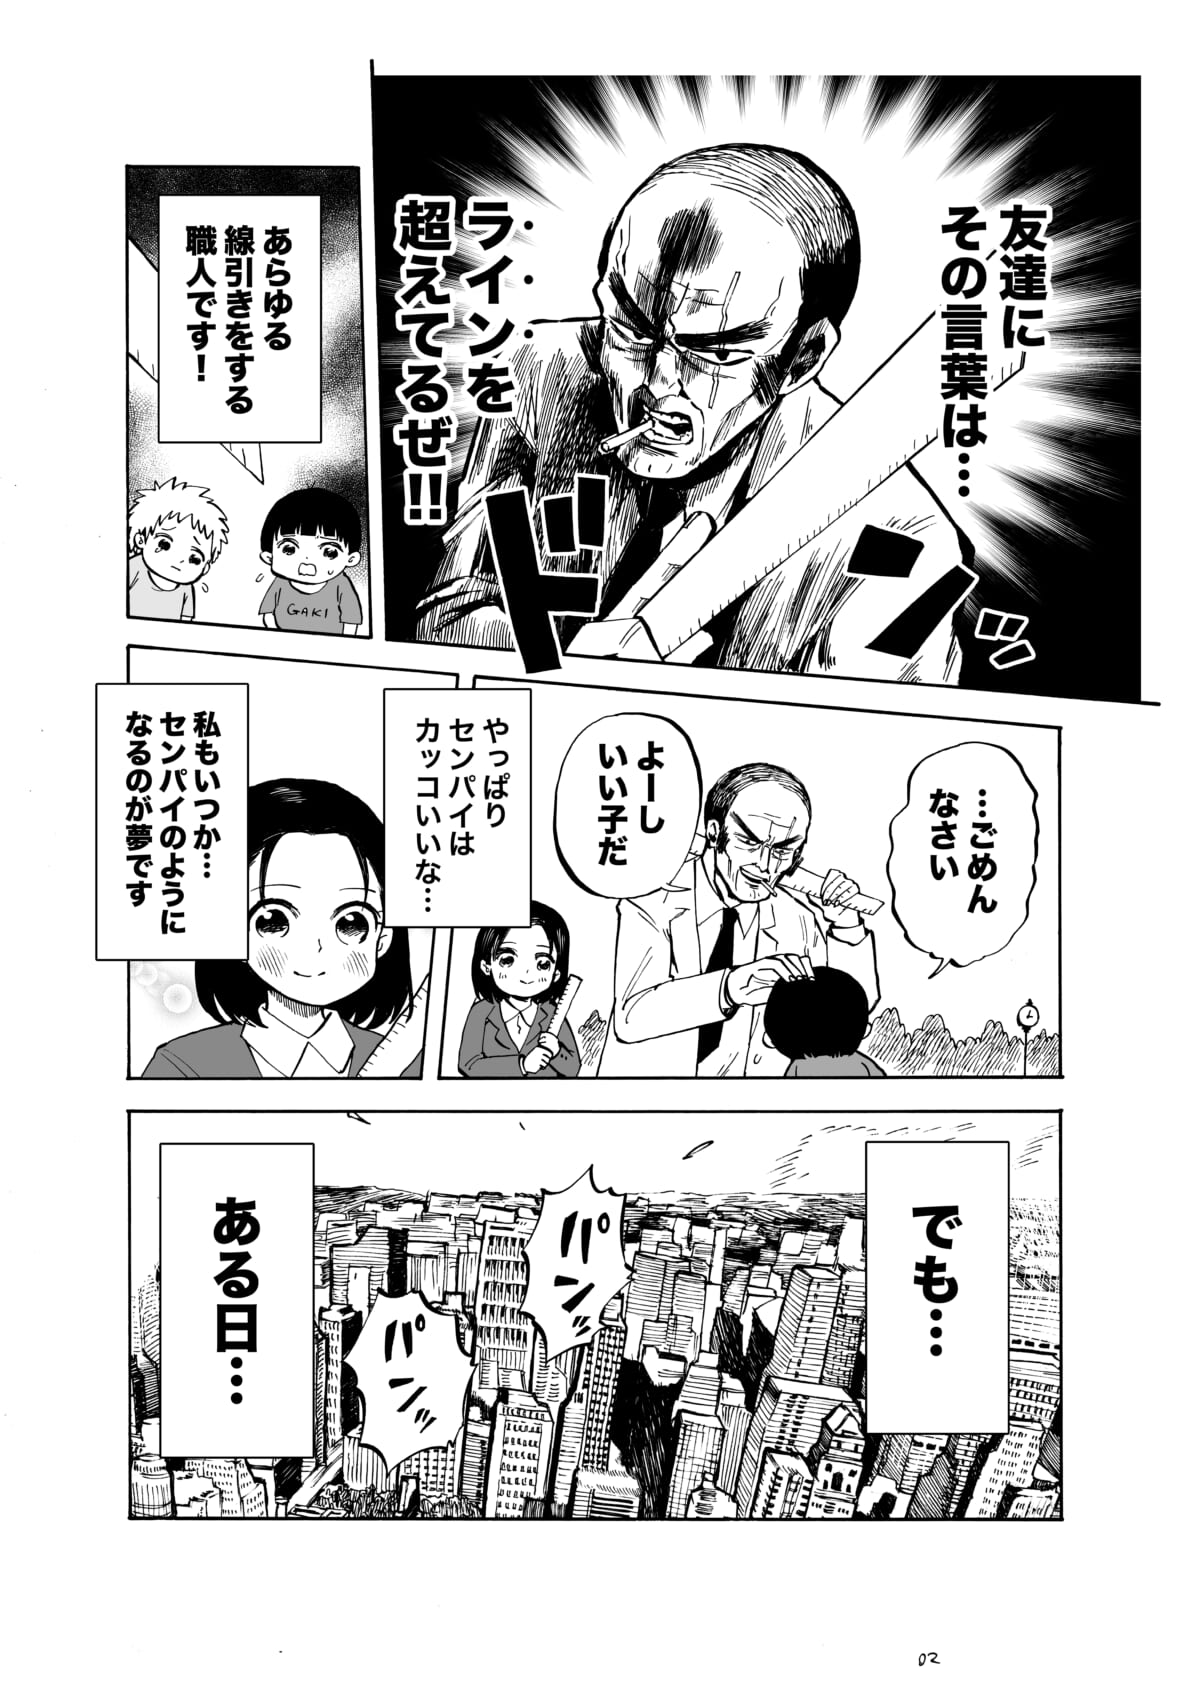 『堂場瞬一サスペンス「ラストライン刑事 岩倉剛」』PR漫画